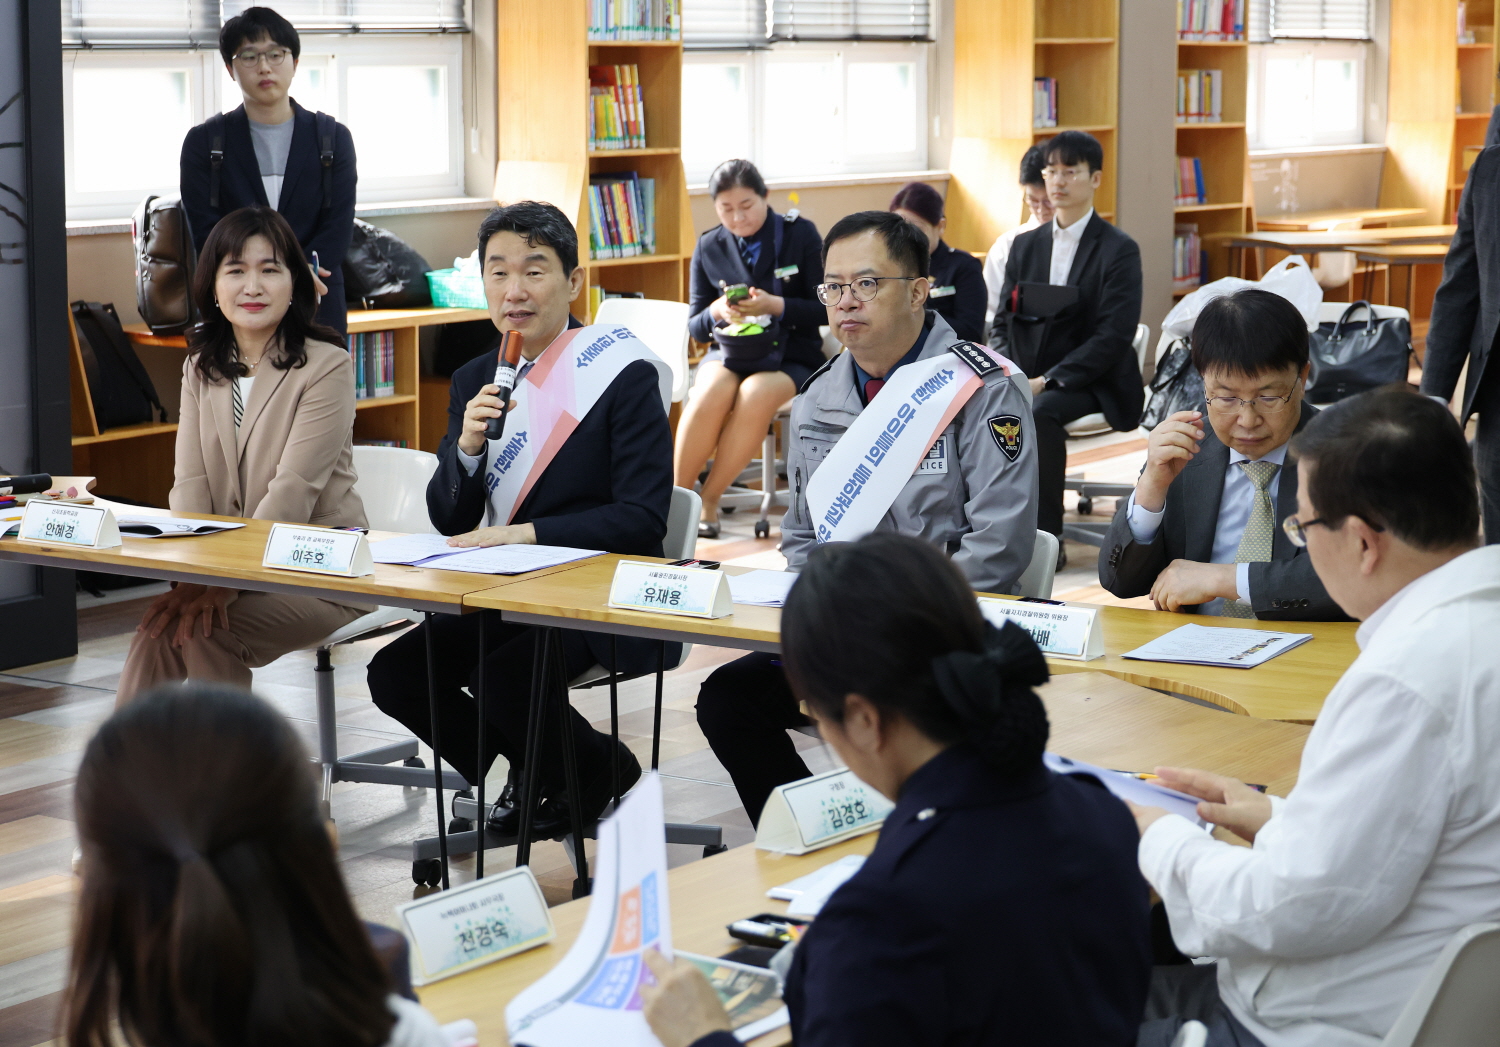 이주호 부총리 겸 교육부장관은 4월 17일(수), 서울 신자초등학교 통학로에서 열리는 등굣길 어린이 교통안전 캠페인 행사에 참여했다.